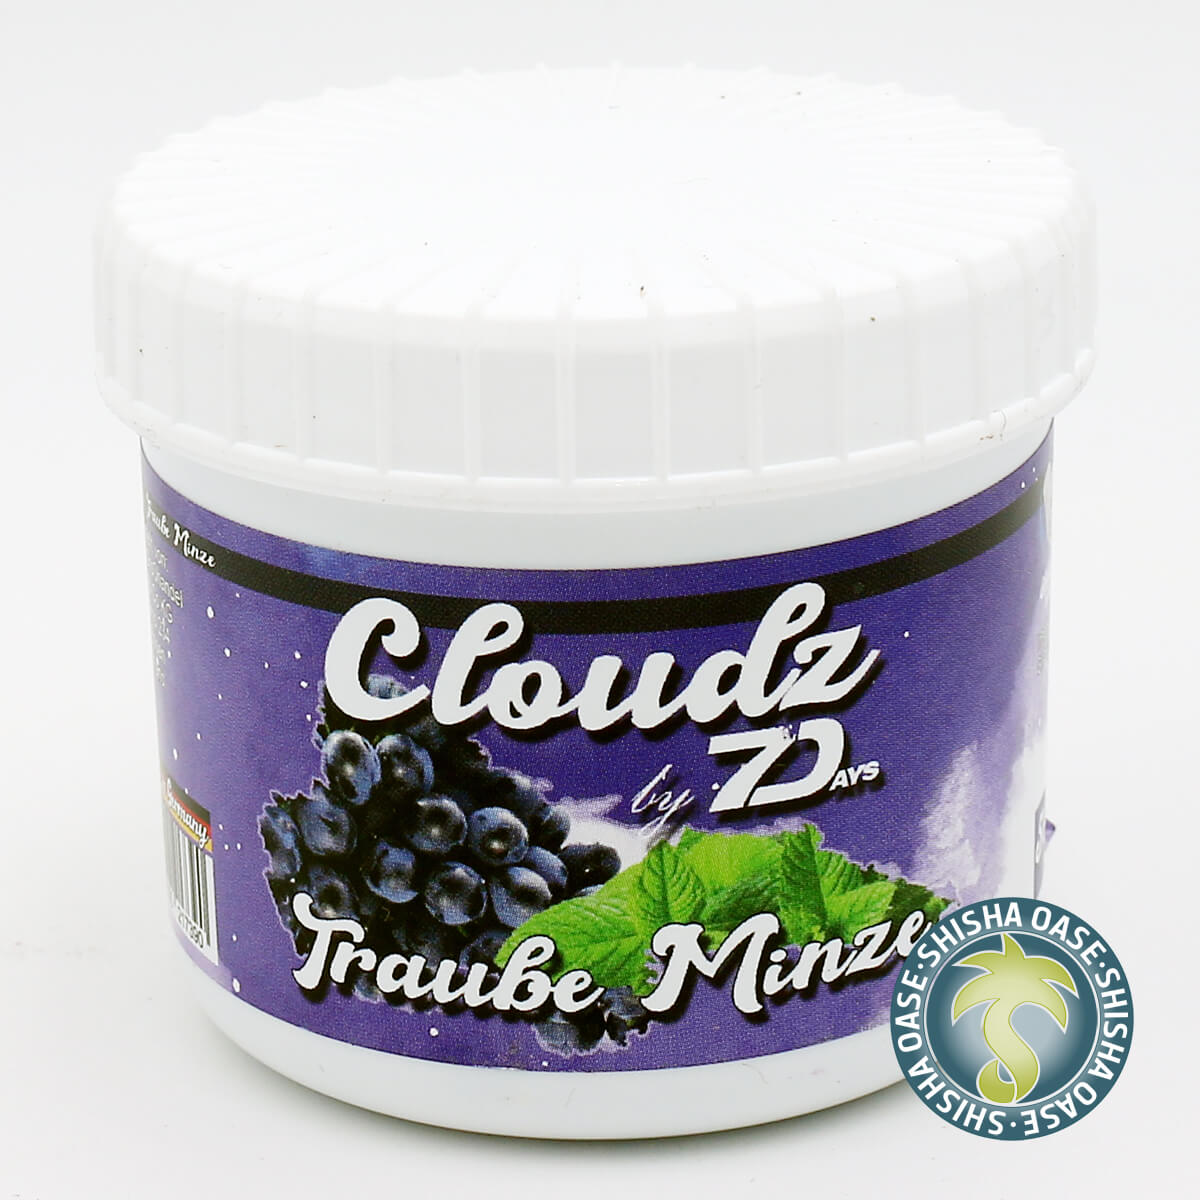 Cloudz by 7 Days Dampfsteine 50g | Traube Minze